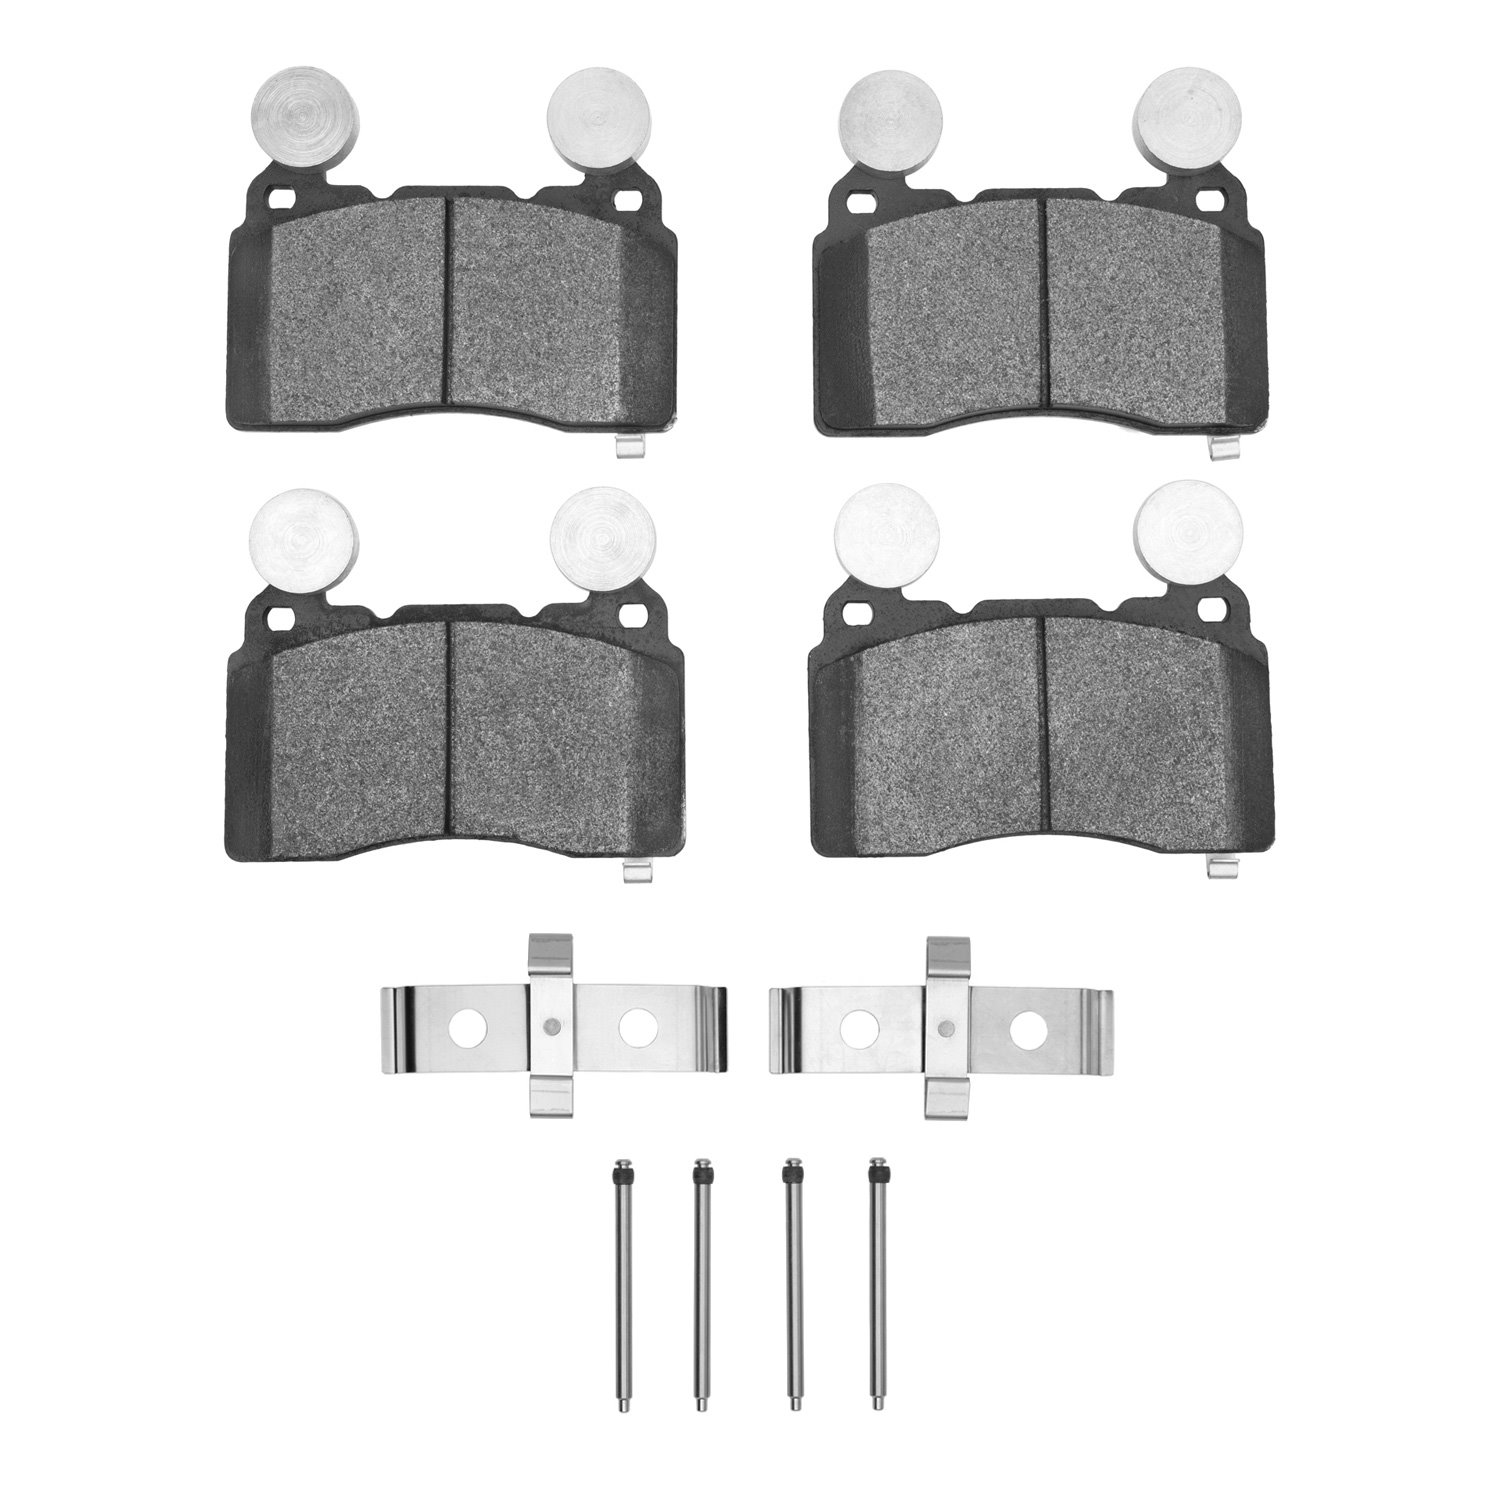 1551-1474-01 5000 Advanced Low-Metallic Brake Pads & Hardware Kit, 2010-2015 GM, Position: Front